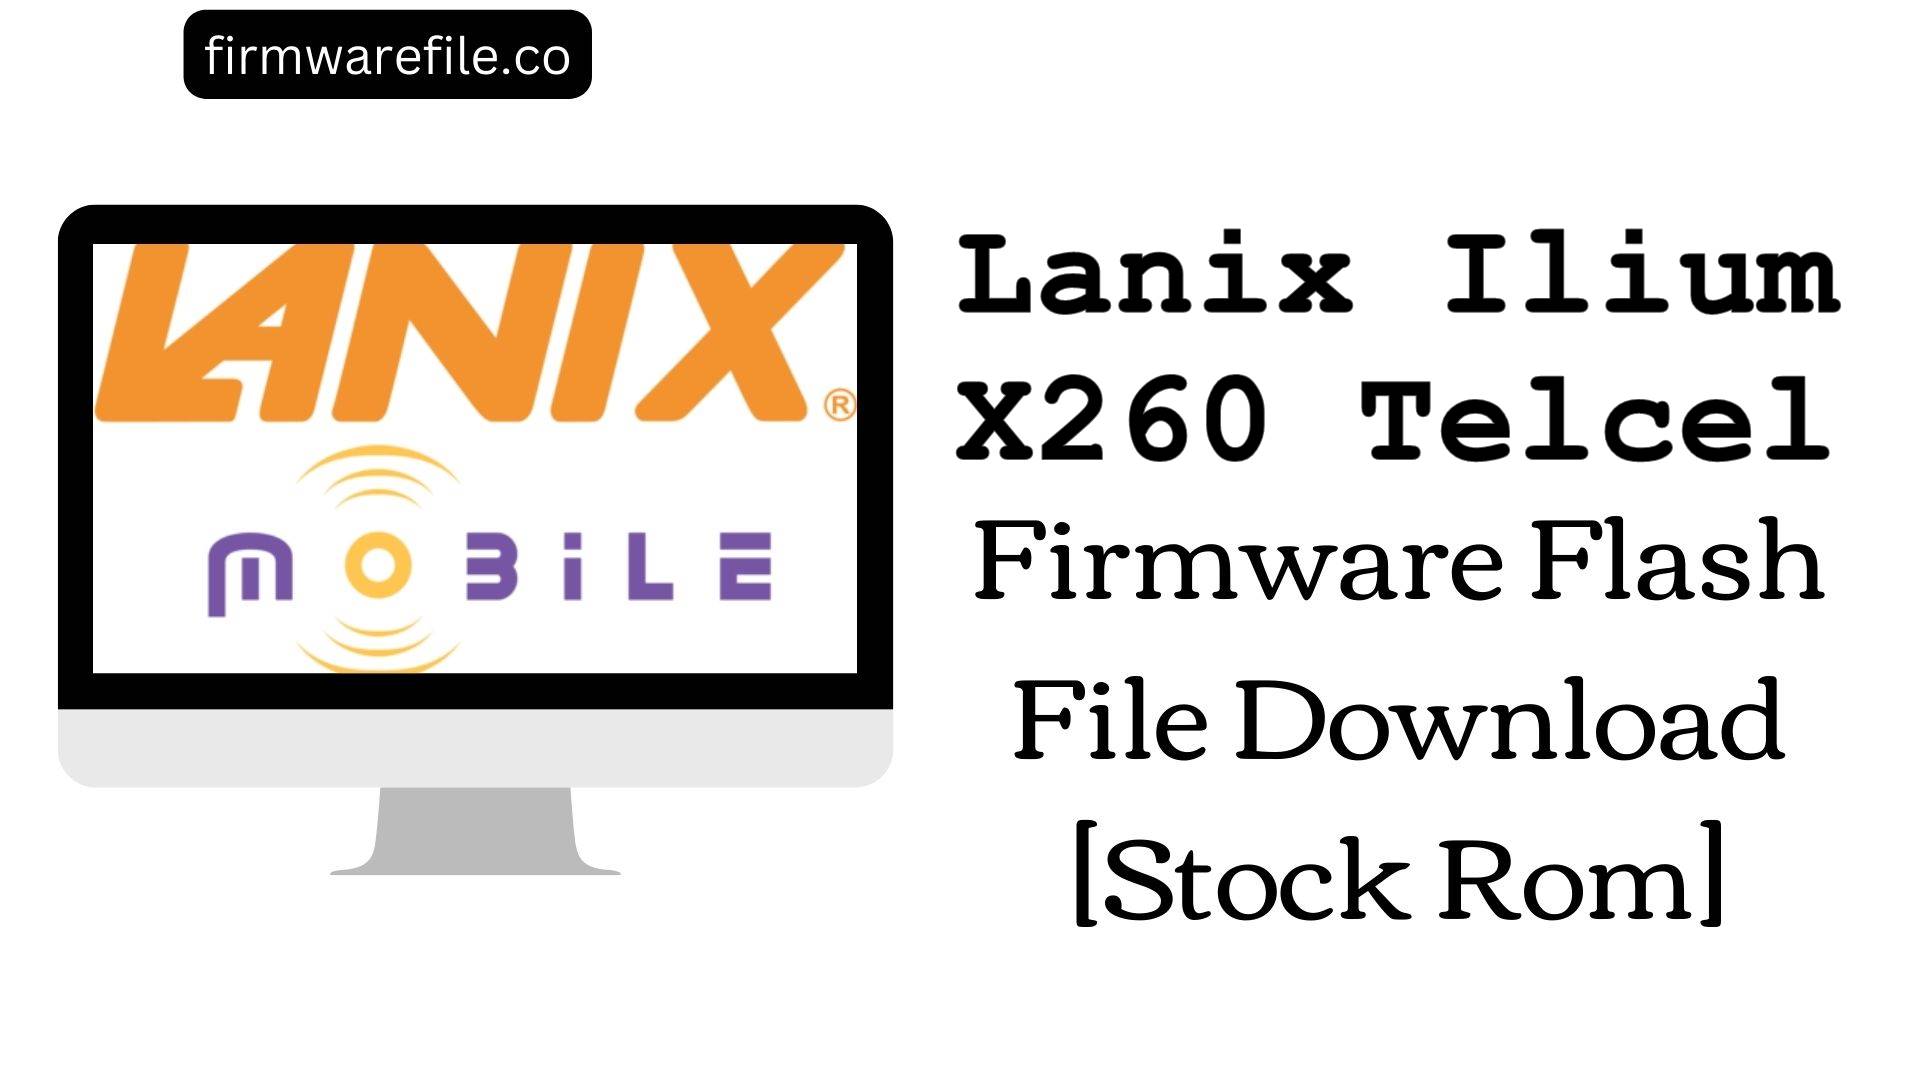 Lanix Ilium X260 Telcel